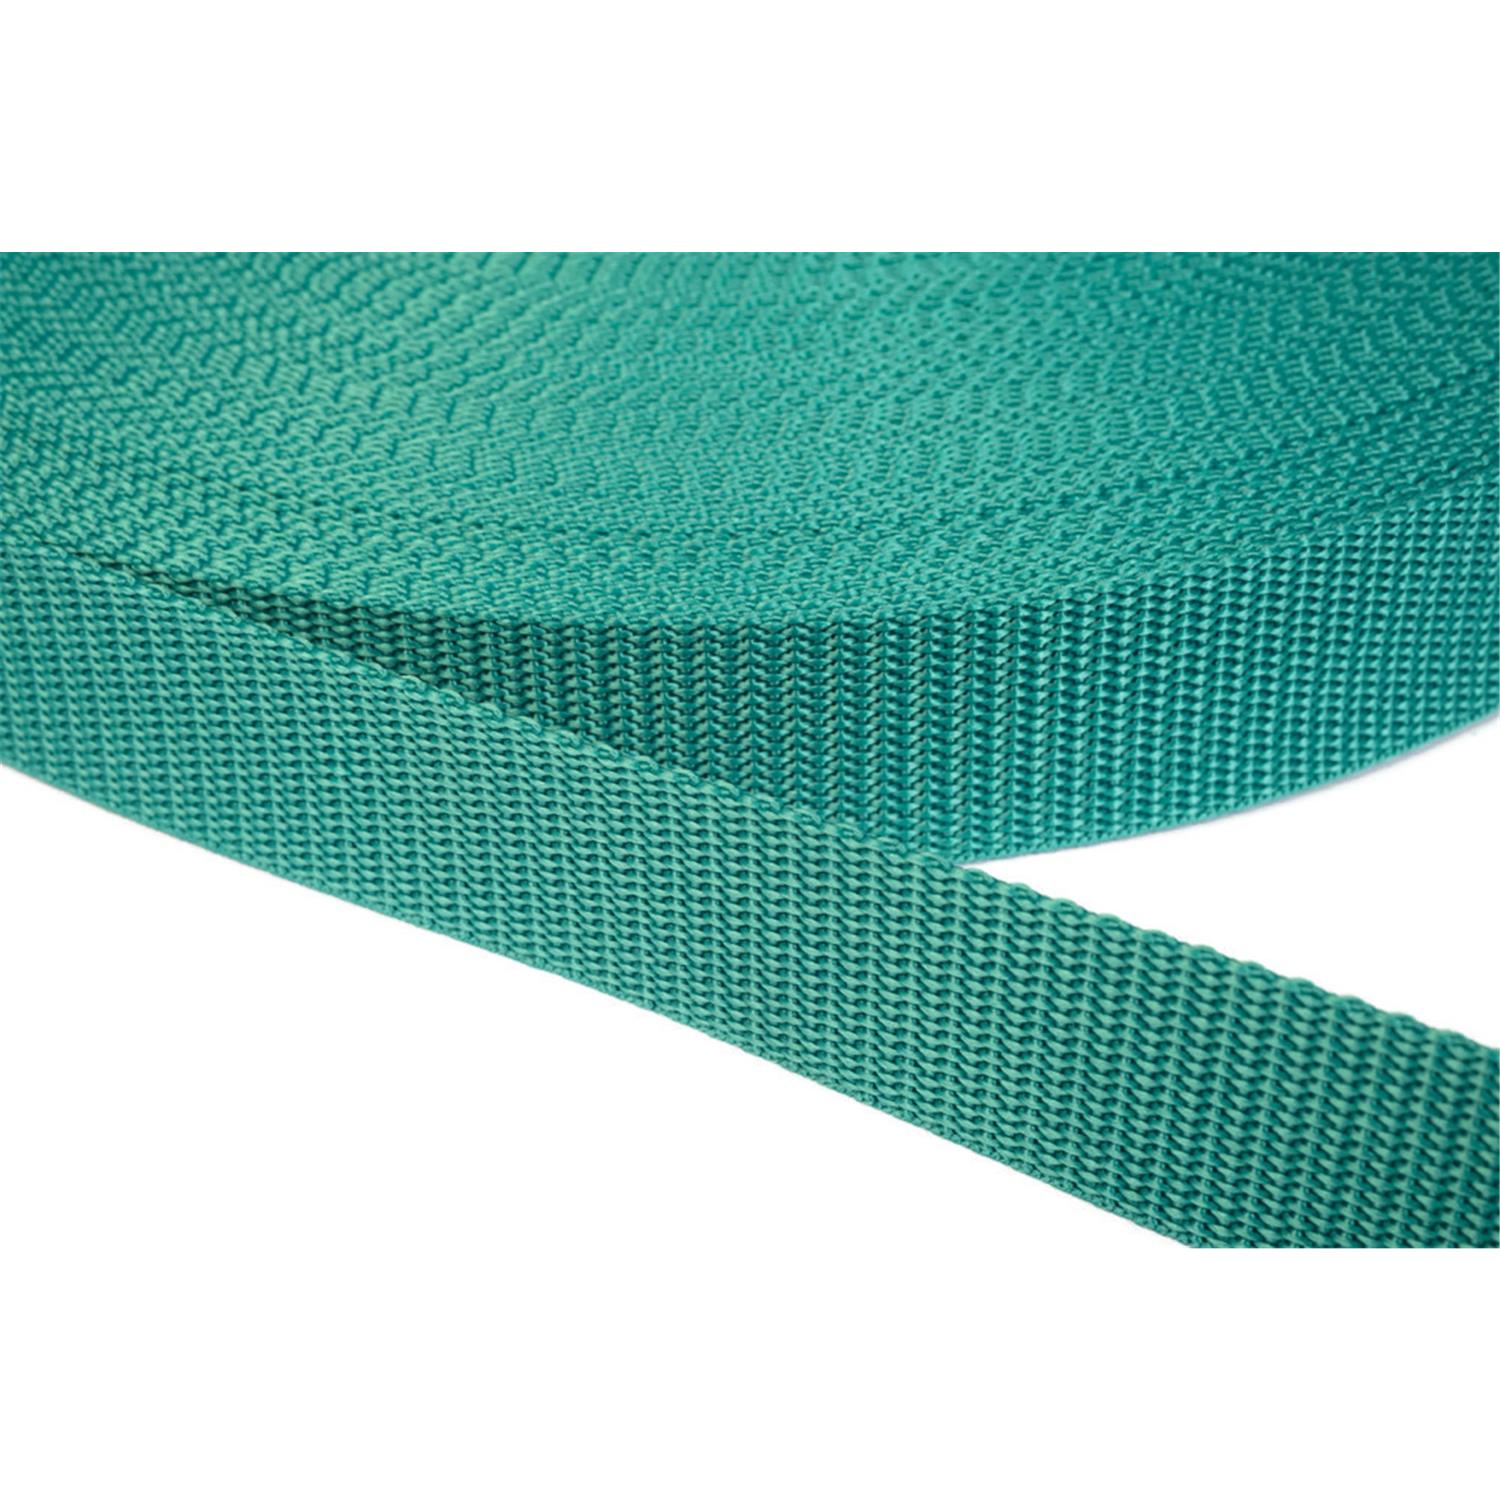 Gurtband 30mm breit aus Polypropylen in 41 Farben 31 - smaragdgrün 6 Meter